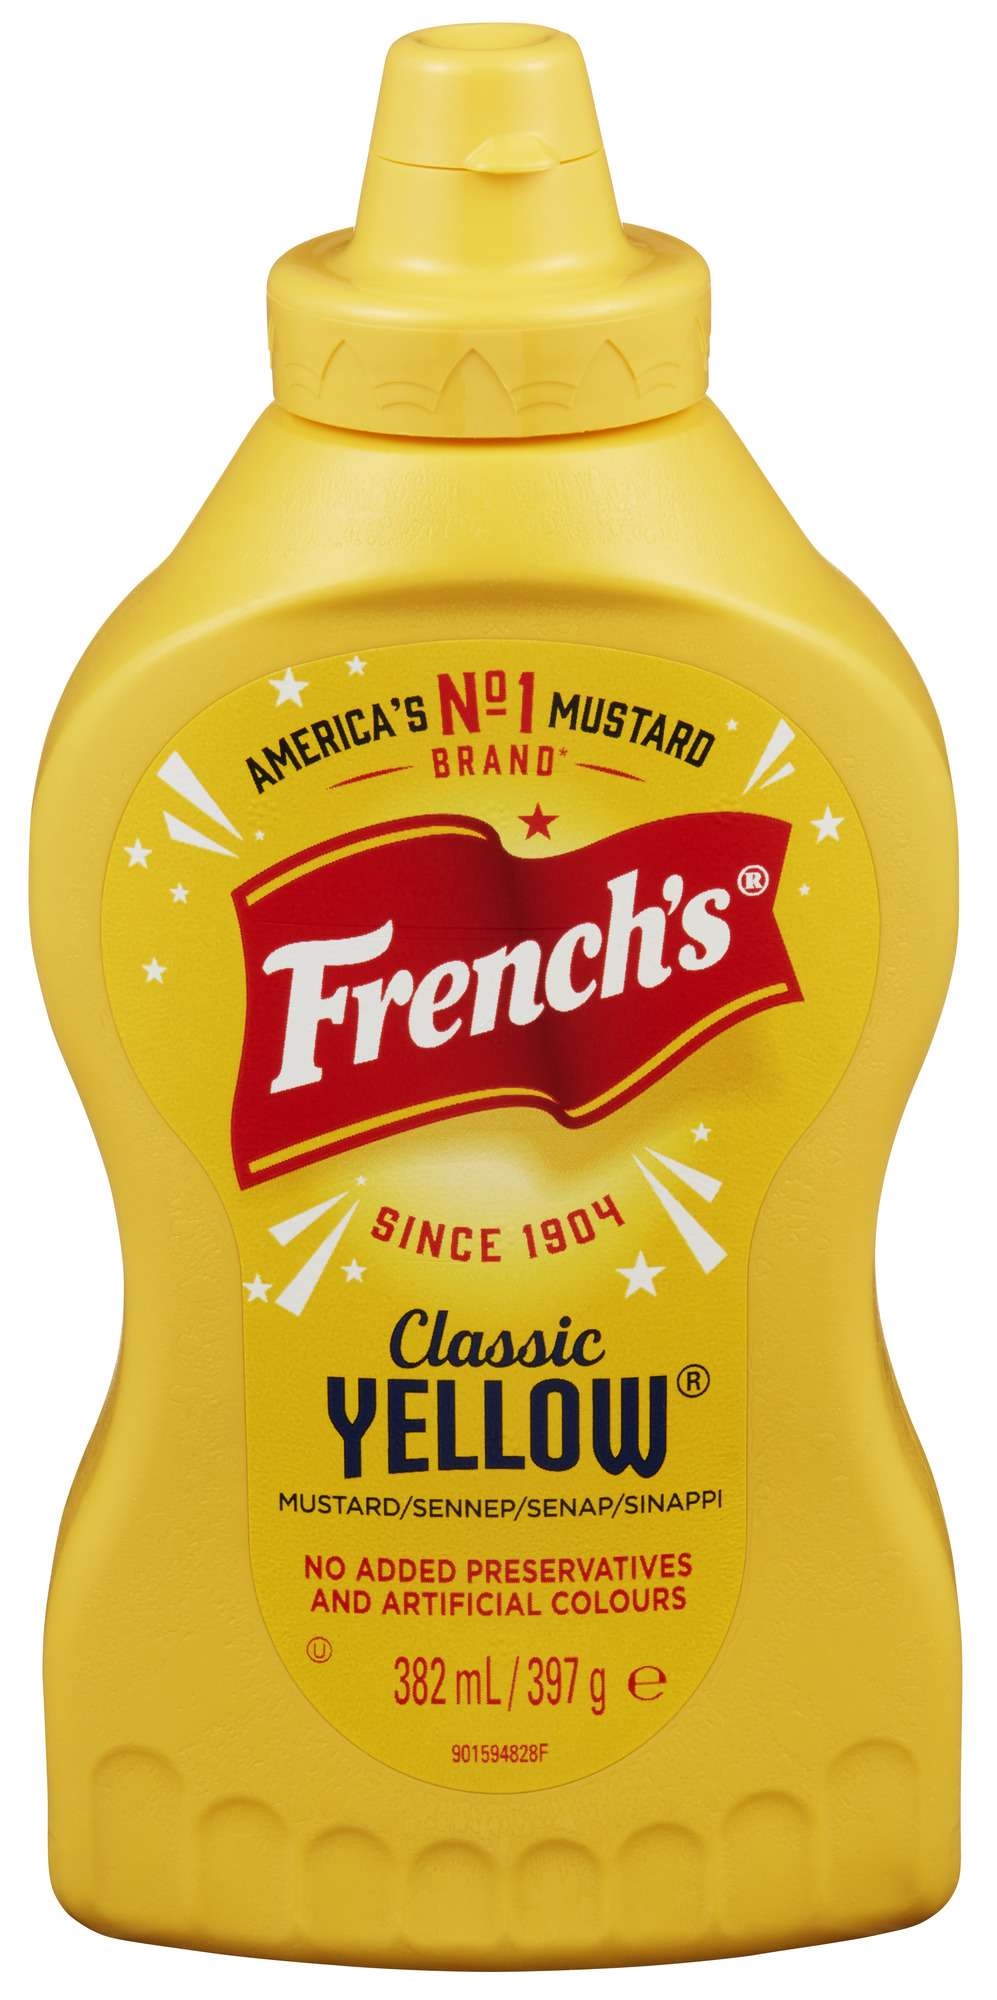 Classic yellow mustard 397g